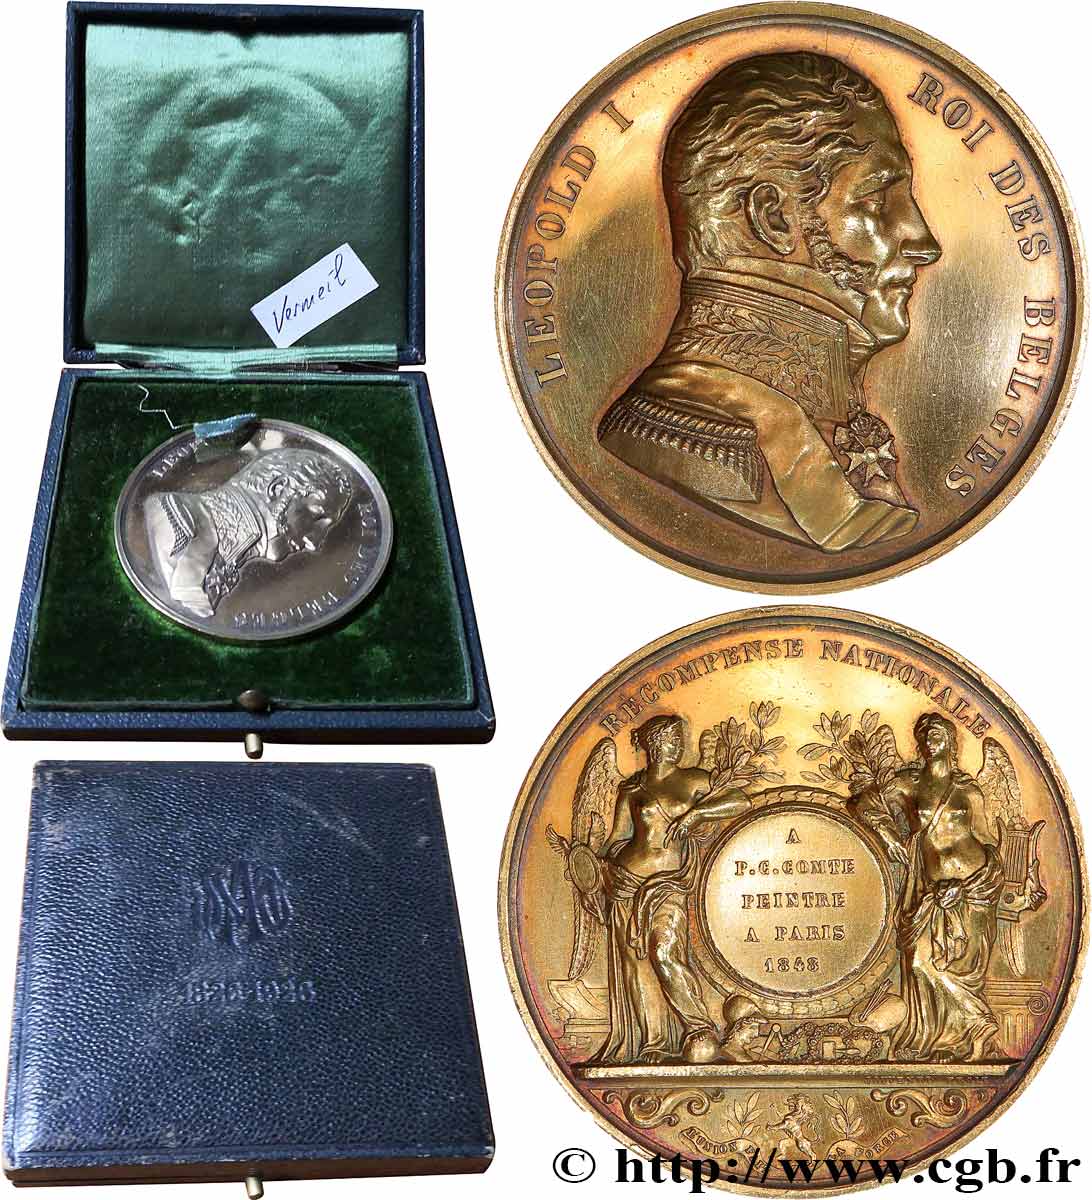 BELGIQUE - ROYAUME DE BELGIQUE - LÉOPOLD Ier Médaille, Récompense nationale à Pierre-Charles Comte TTB+